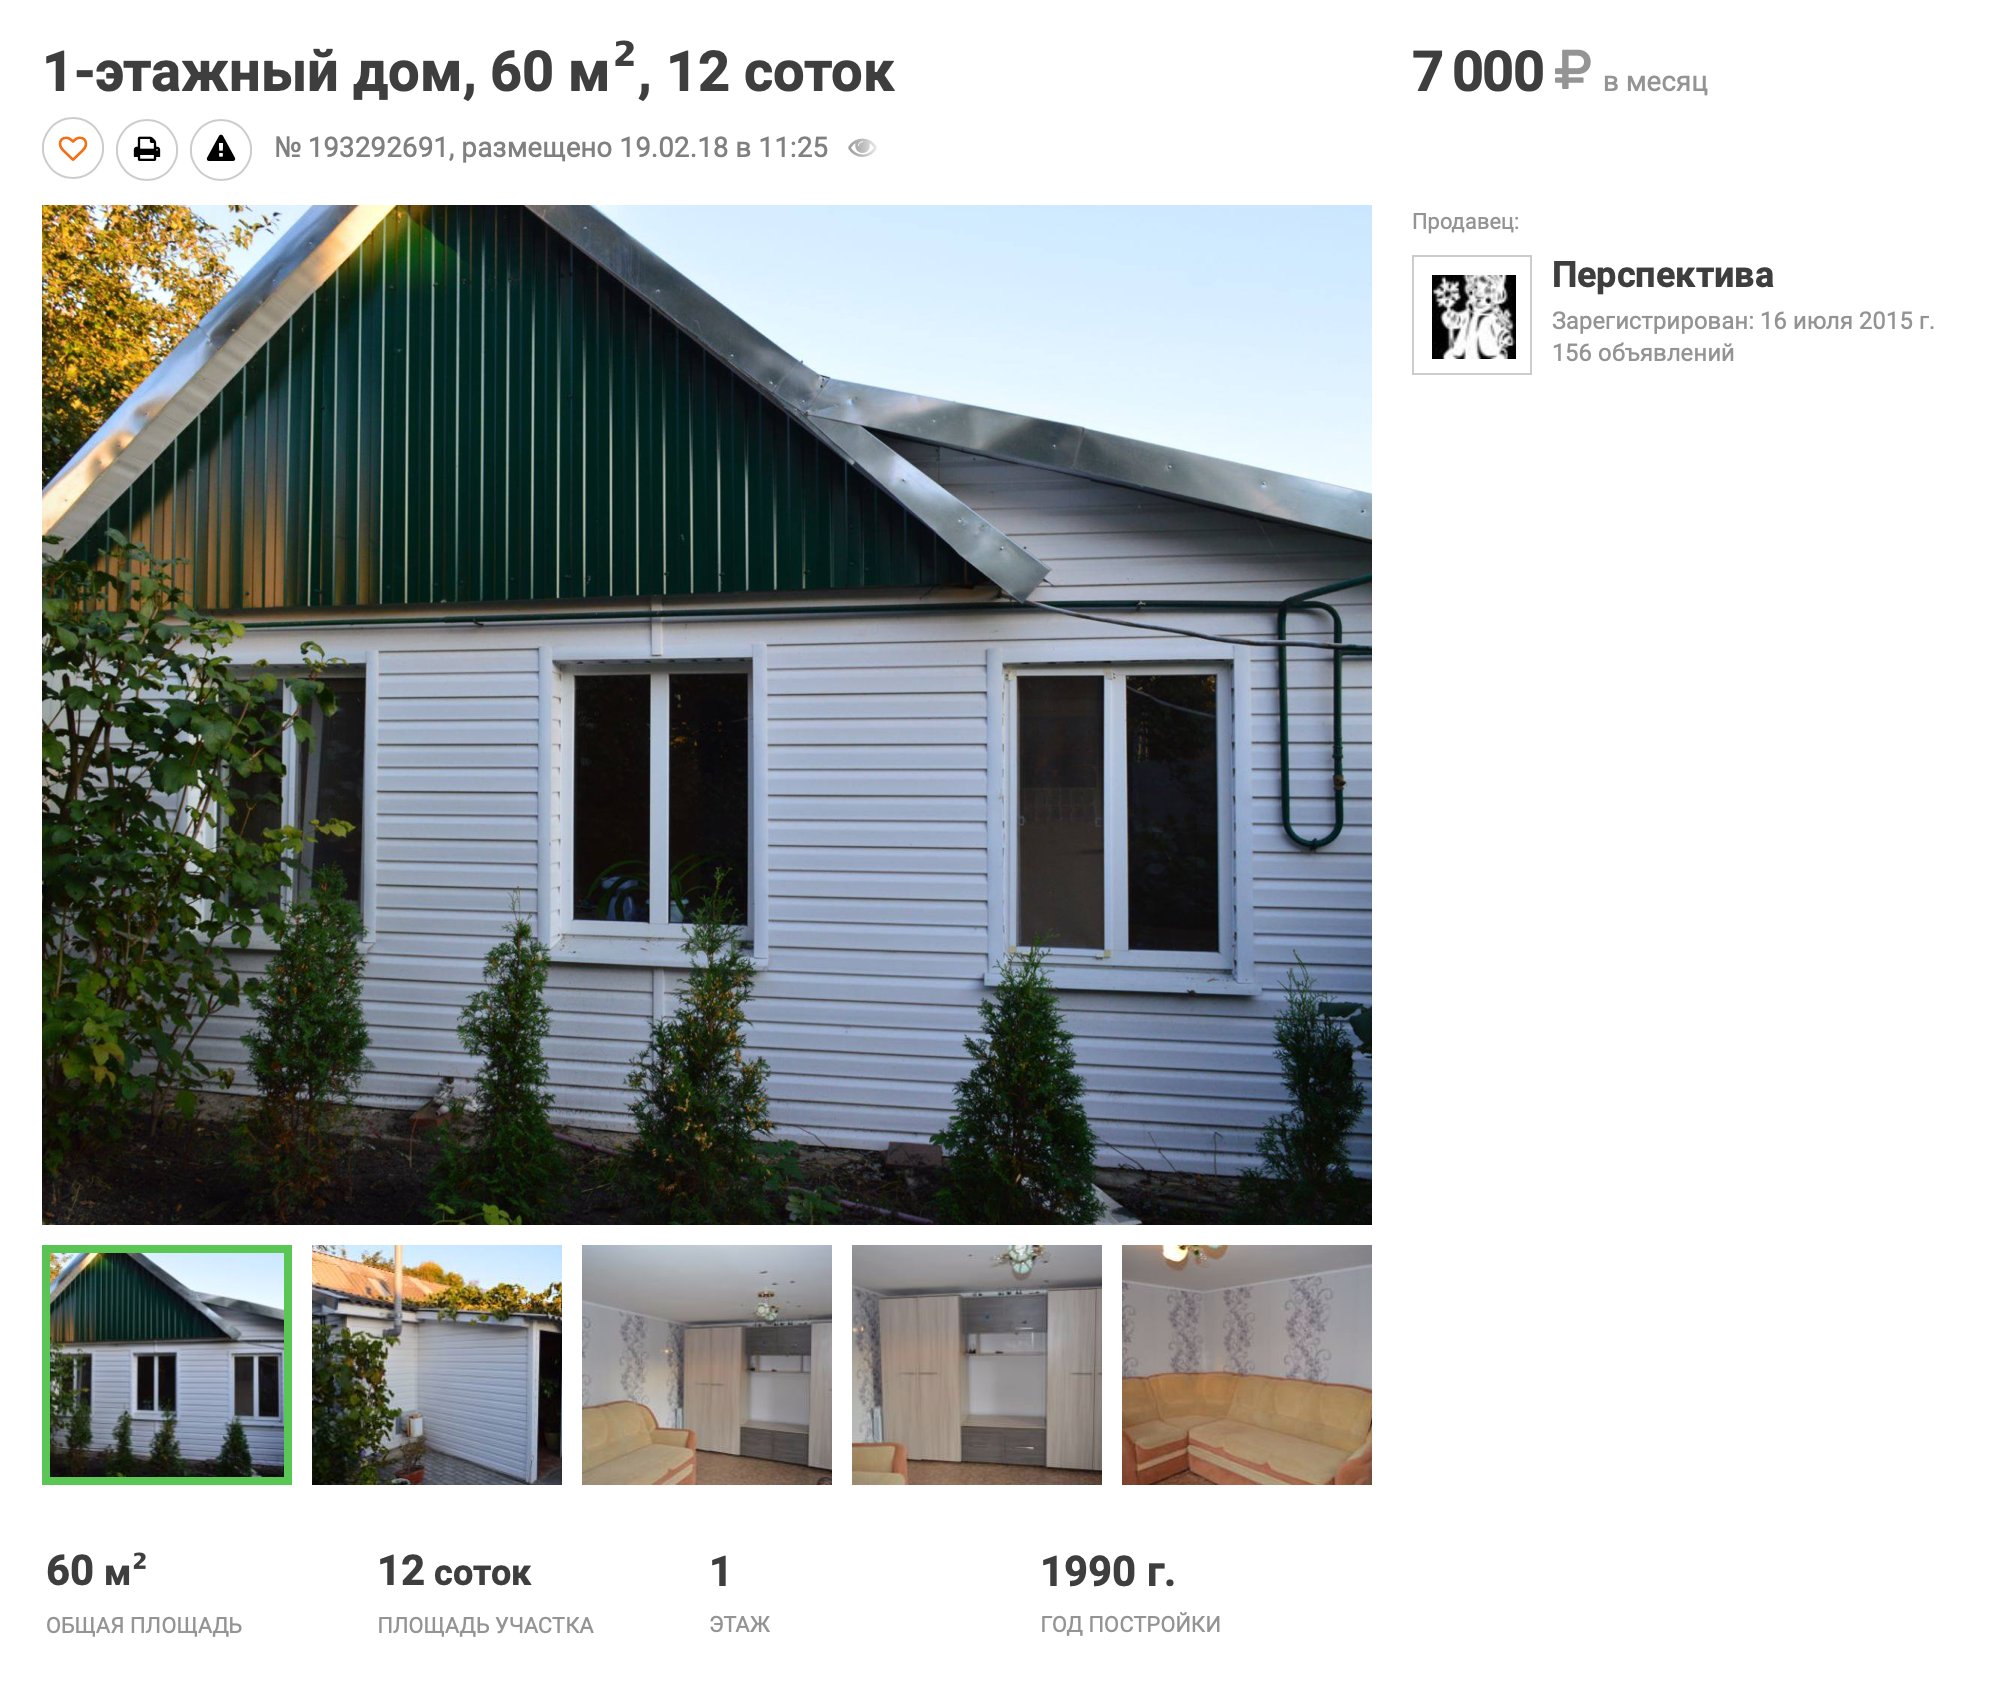 Снять небольшой дом можно за 7 тысяч рублей